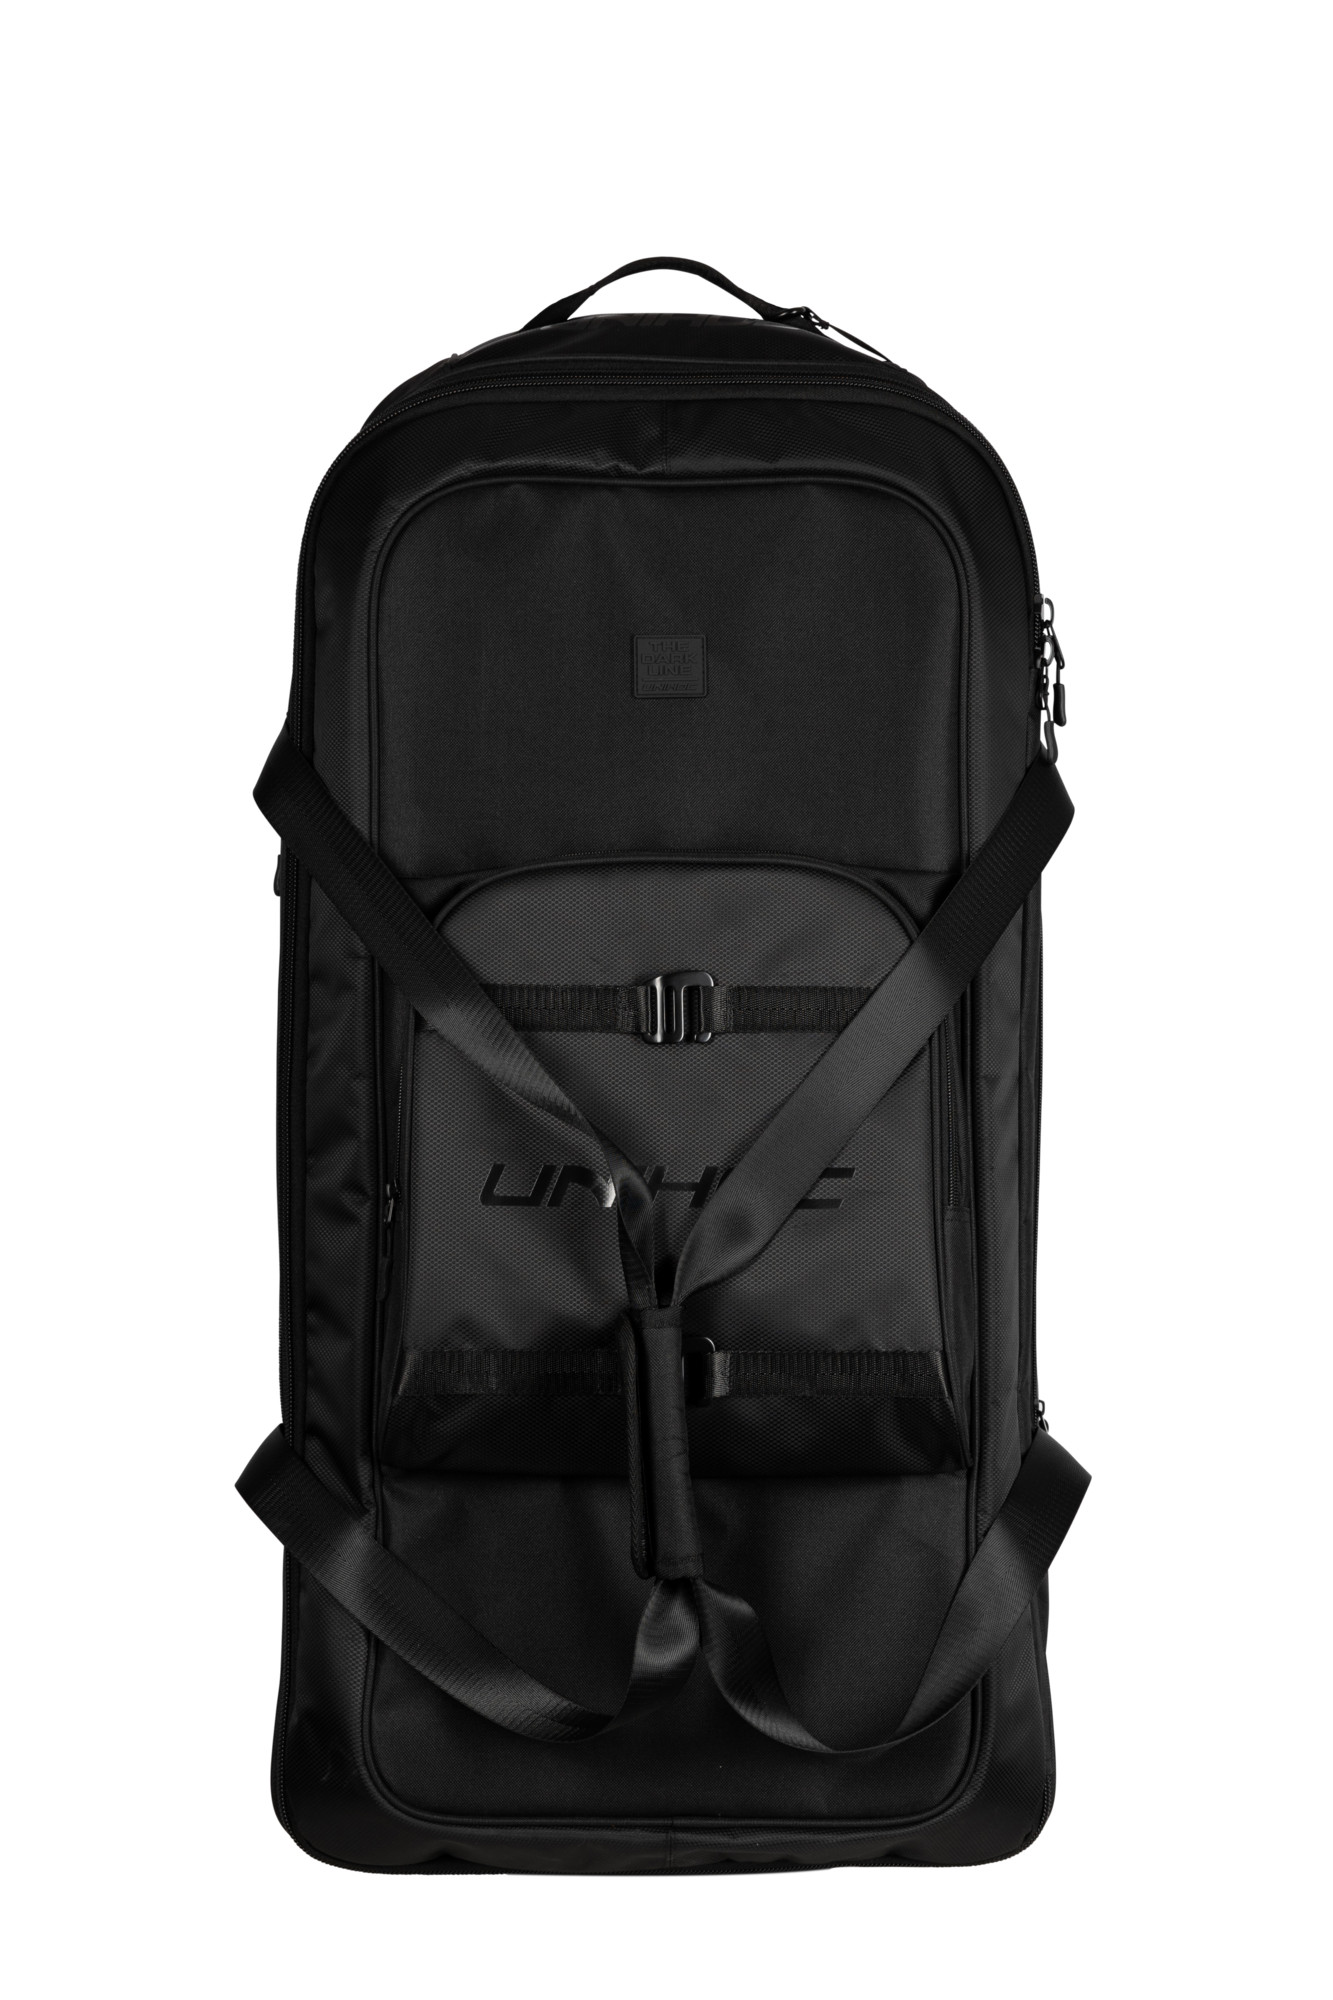 Unihoc Goalie backpack DARK LINE large black (100L) černá